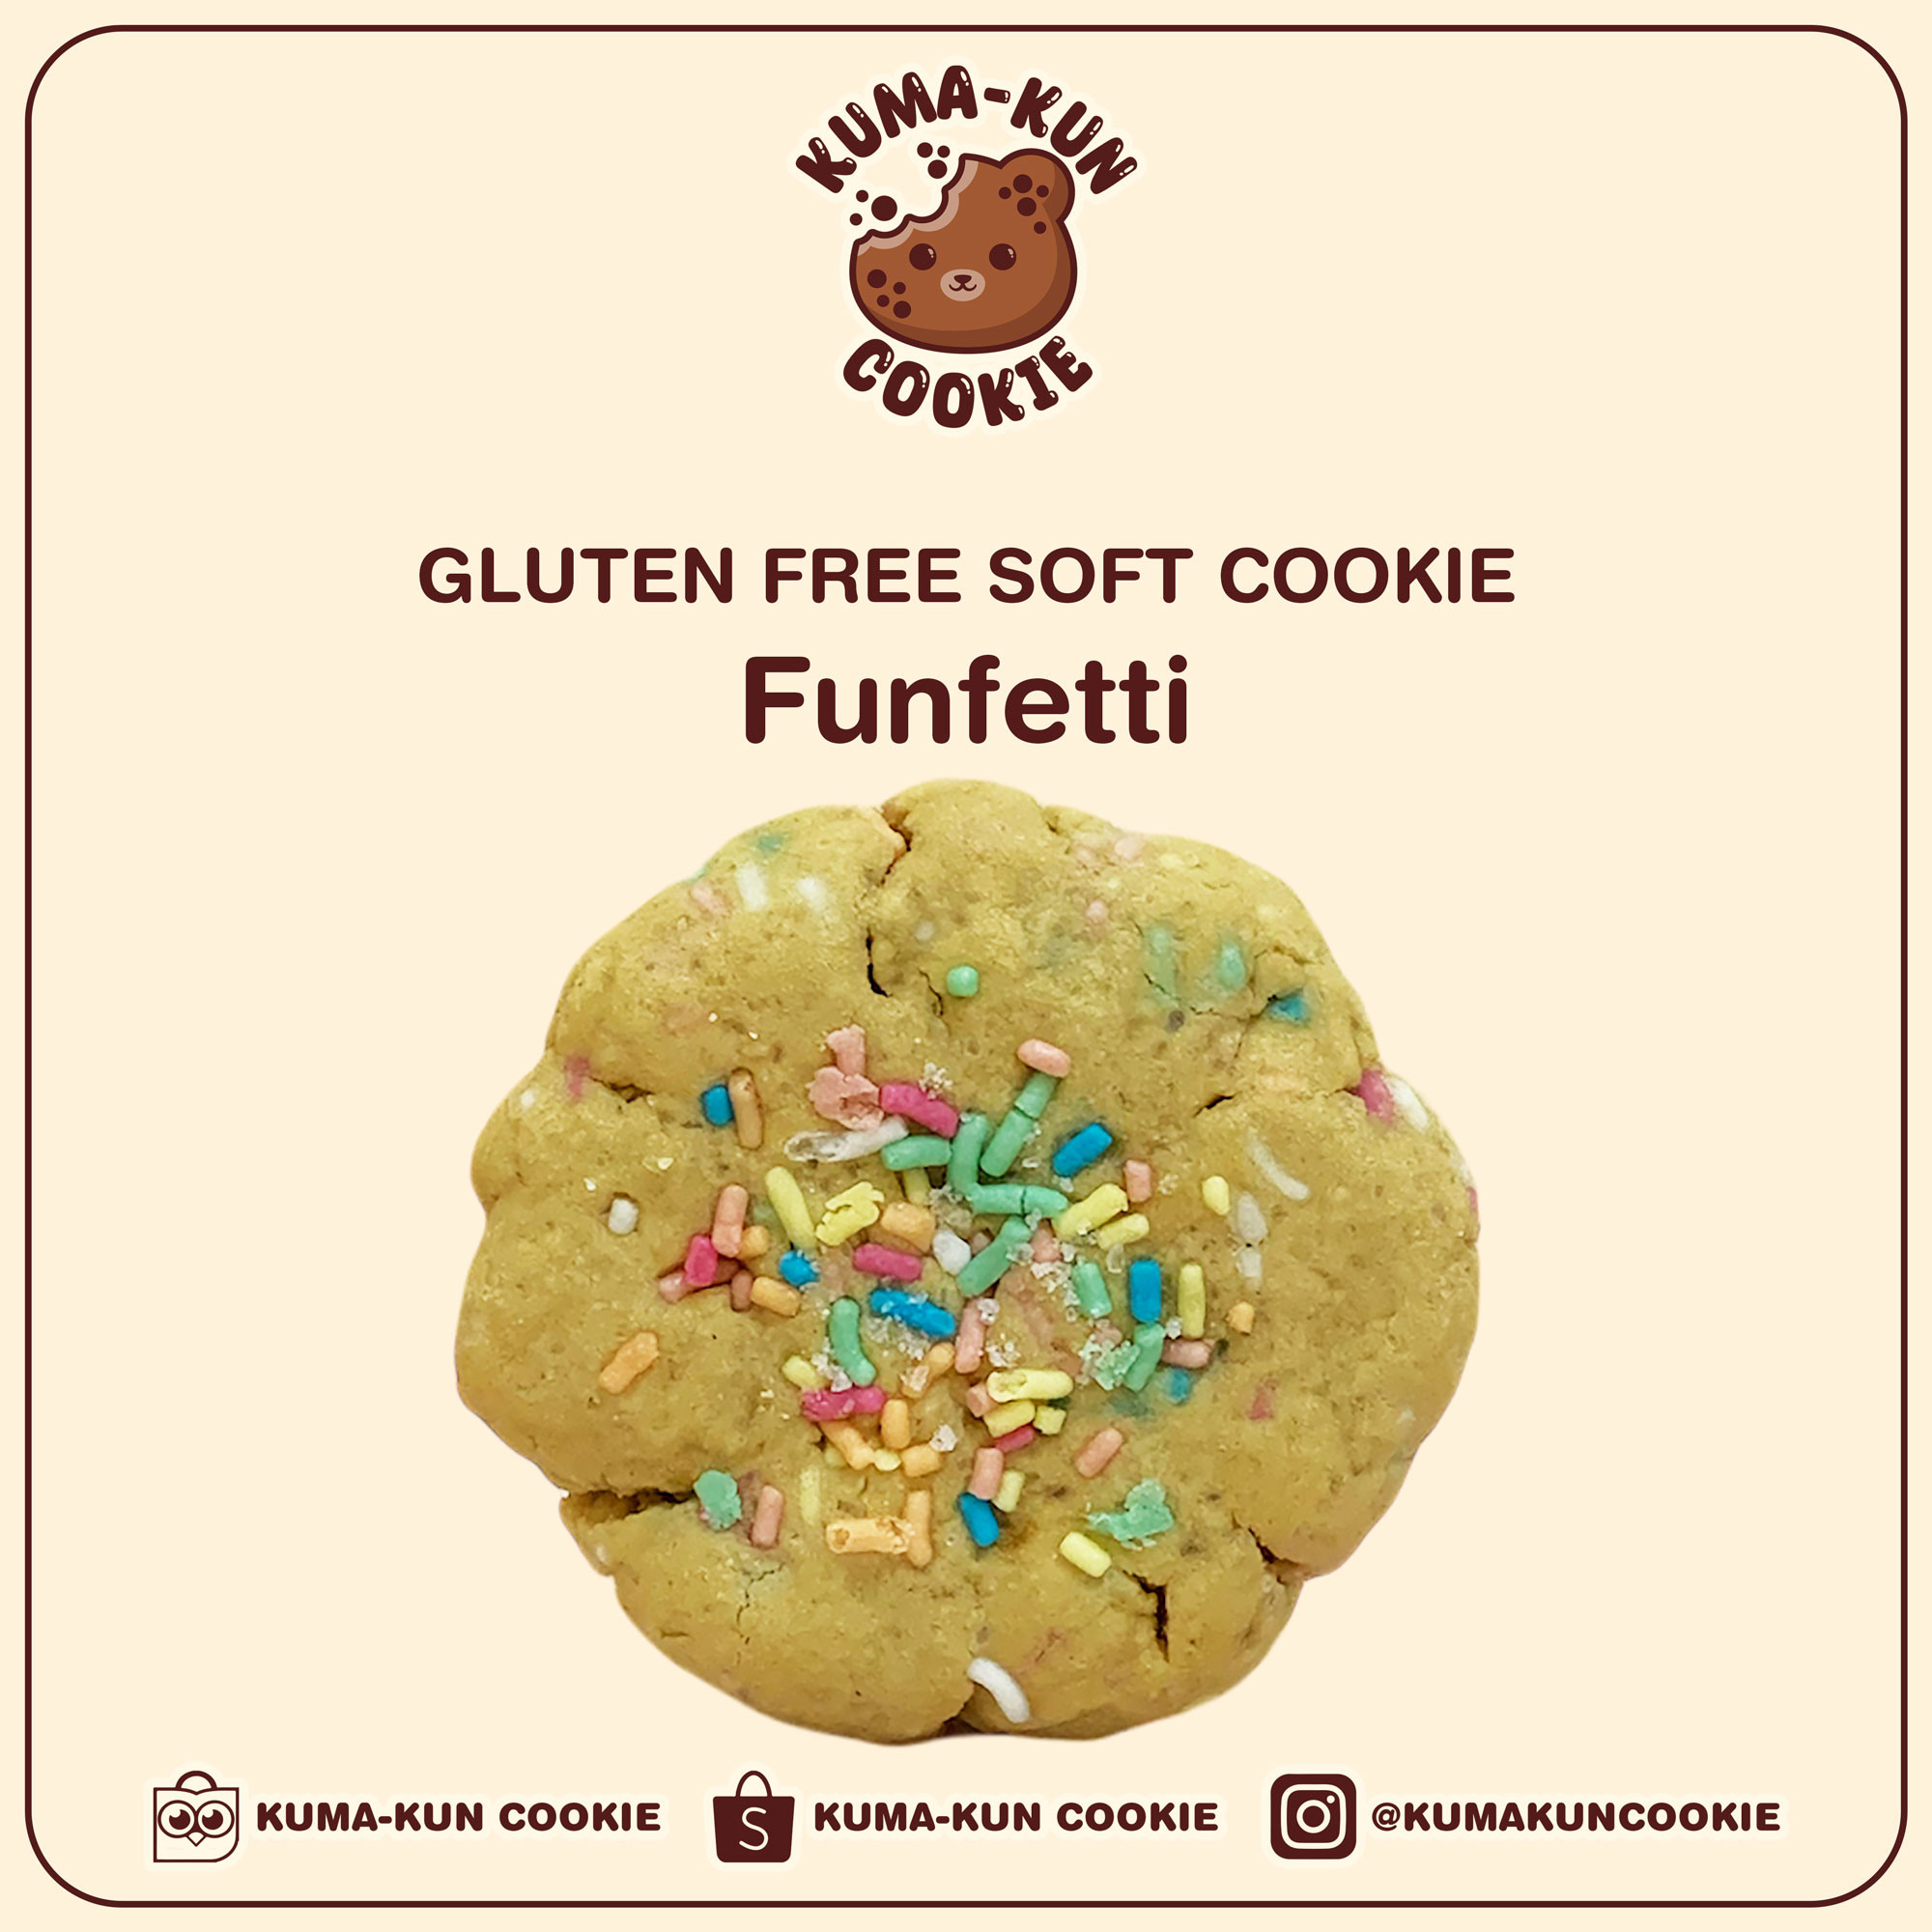 Gluten Free Soft Cookie - Funfetti